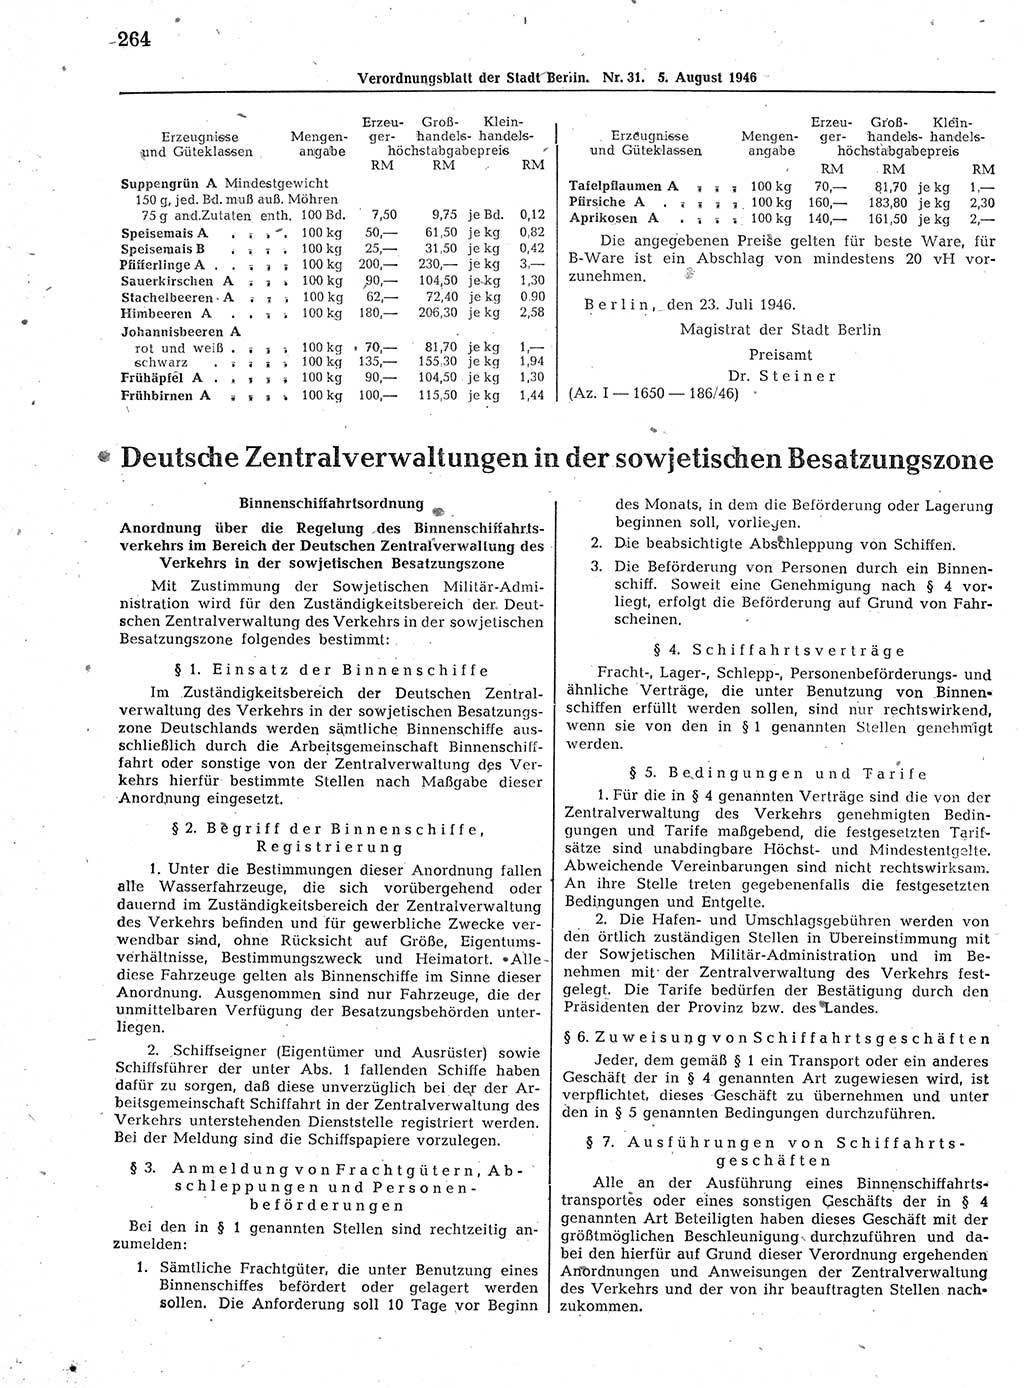 Verordnungsblatt (VOBl.) der Stadt Berlin, für Groß-Berlin 1946, Seite 264 (VOBl. Bln. 1946, S. 264)